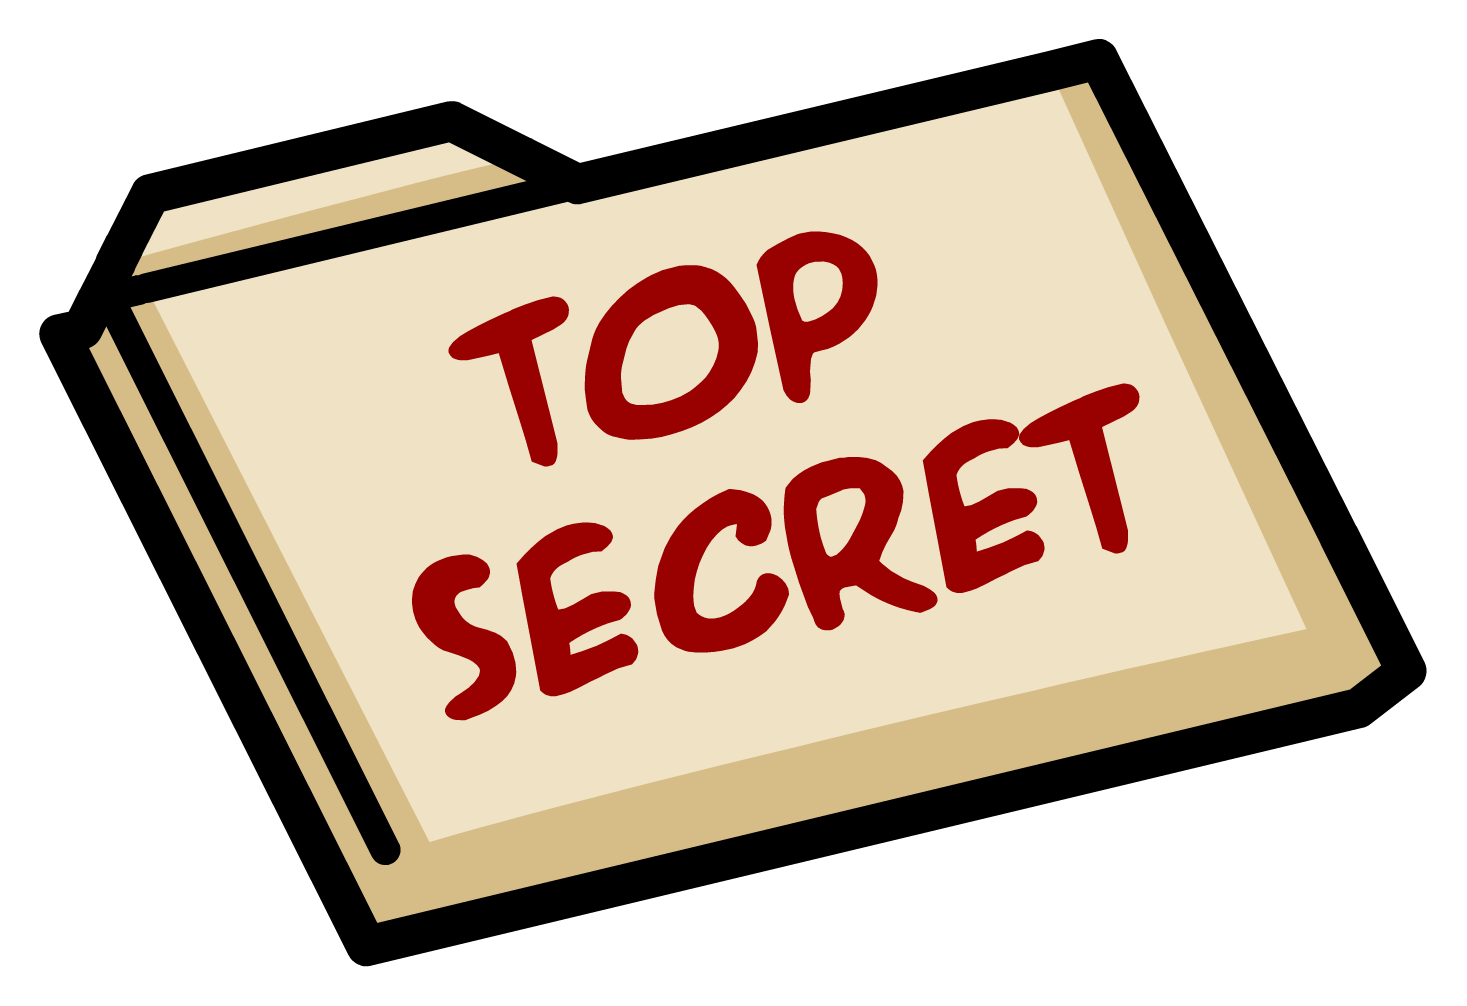 Top Secret Document Icon